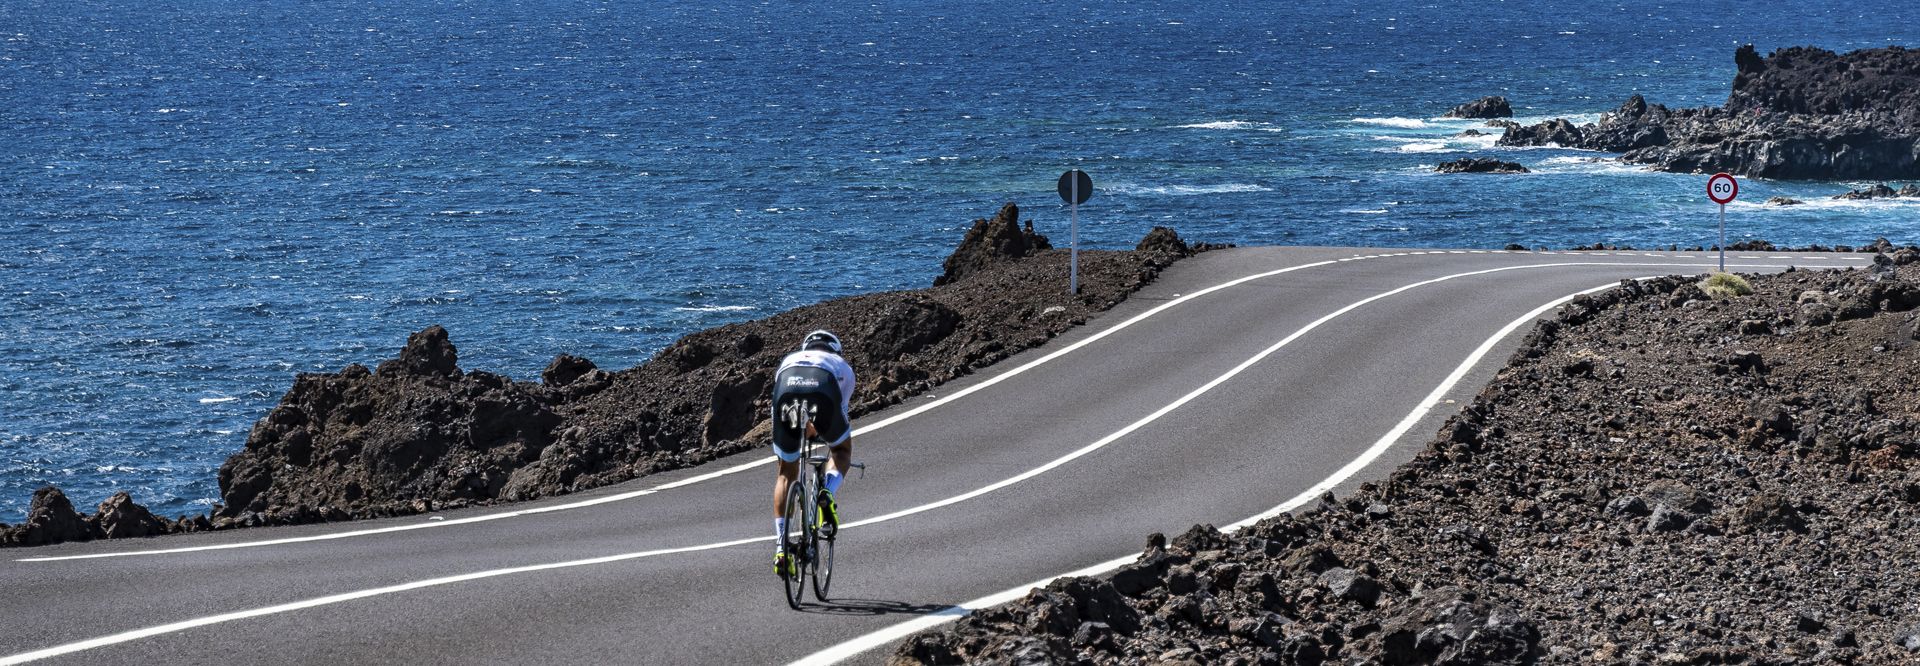 Ruta ciclista por El Golfo. Guía de turismo y planazos en Lanzarote.